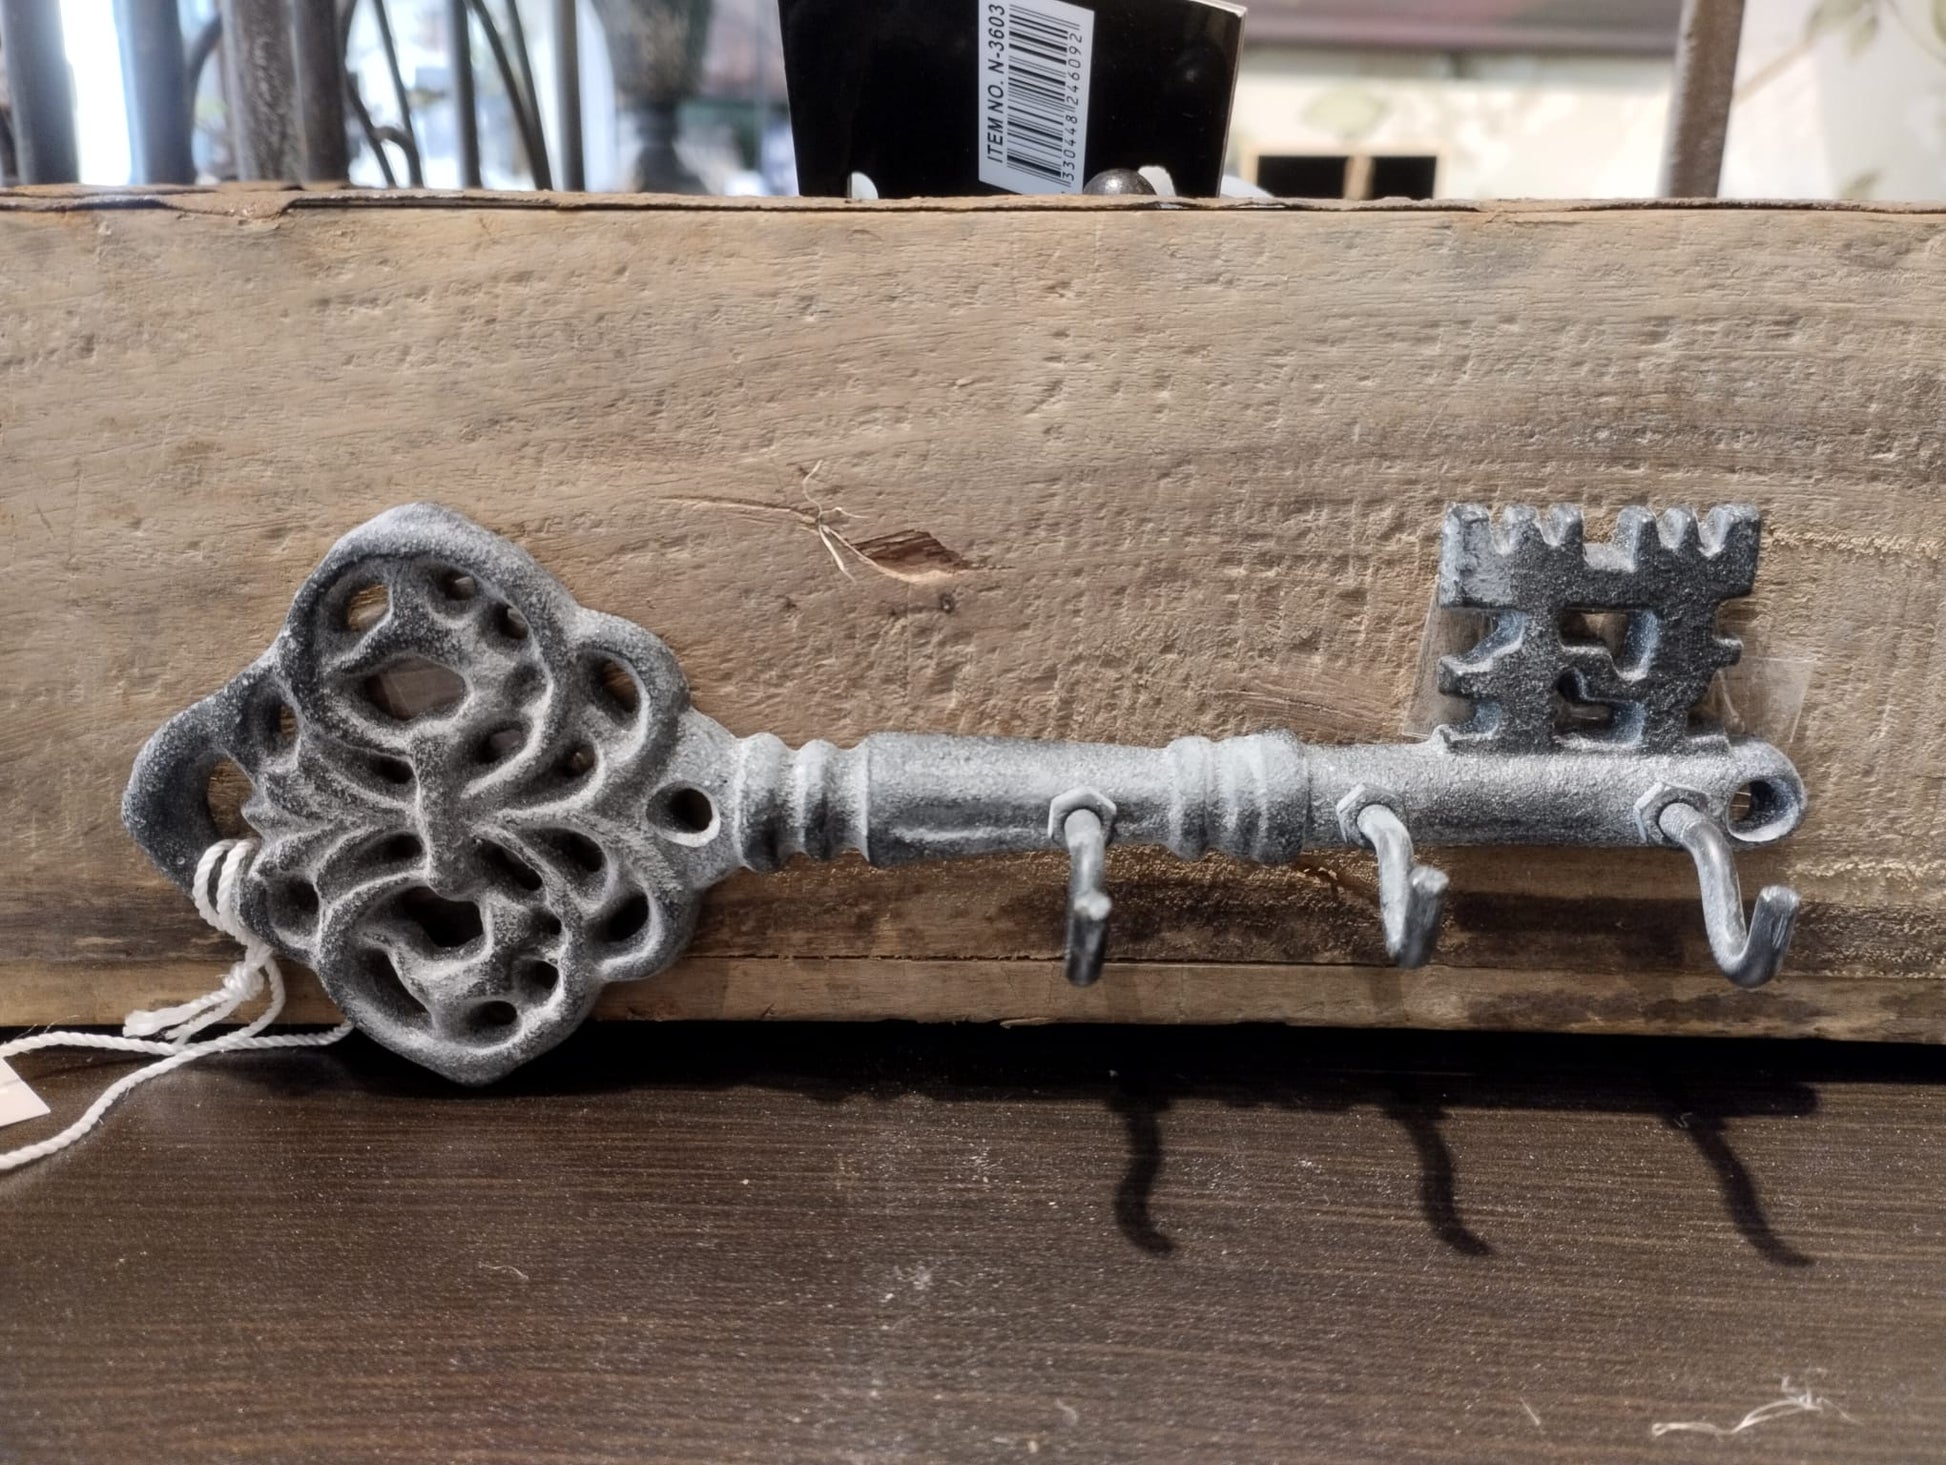 Hängare i form av en nyckel & 3 stycken krokar till upphängning.  Material: Järn  Mått: H6,5/L19/B3,5 cm  Färg: antik grå  Obs. Skruva ingår ej.